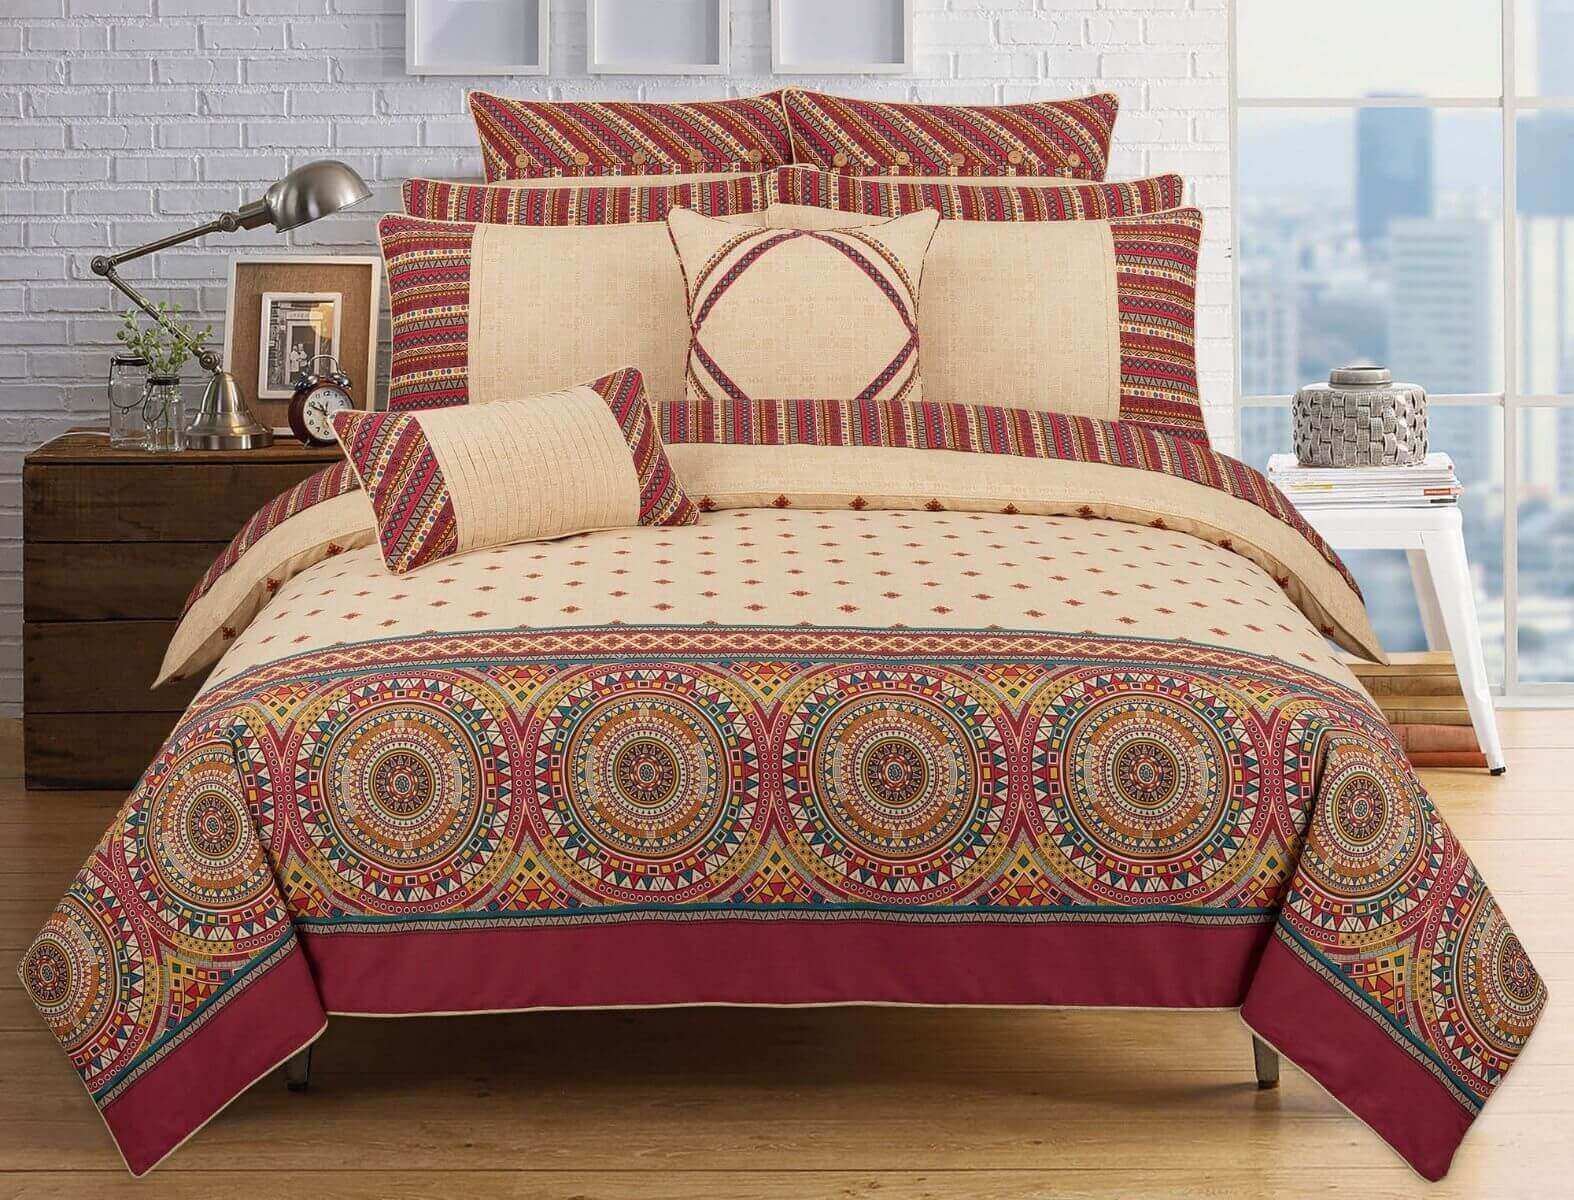 Beautiful Design Bedroom Bed Sheet